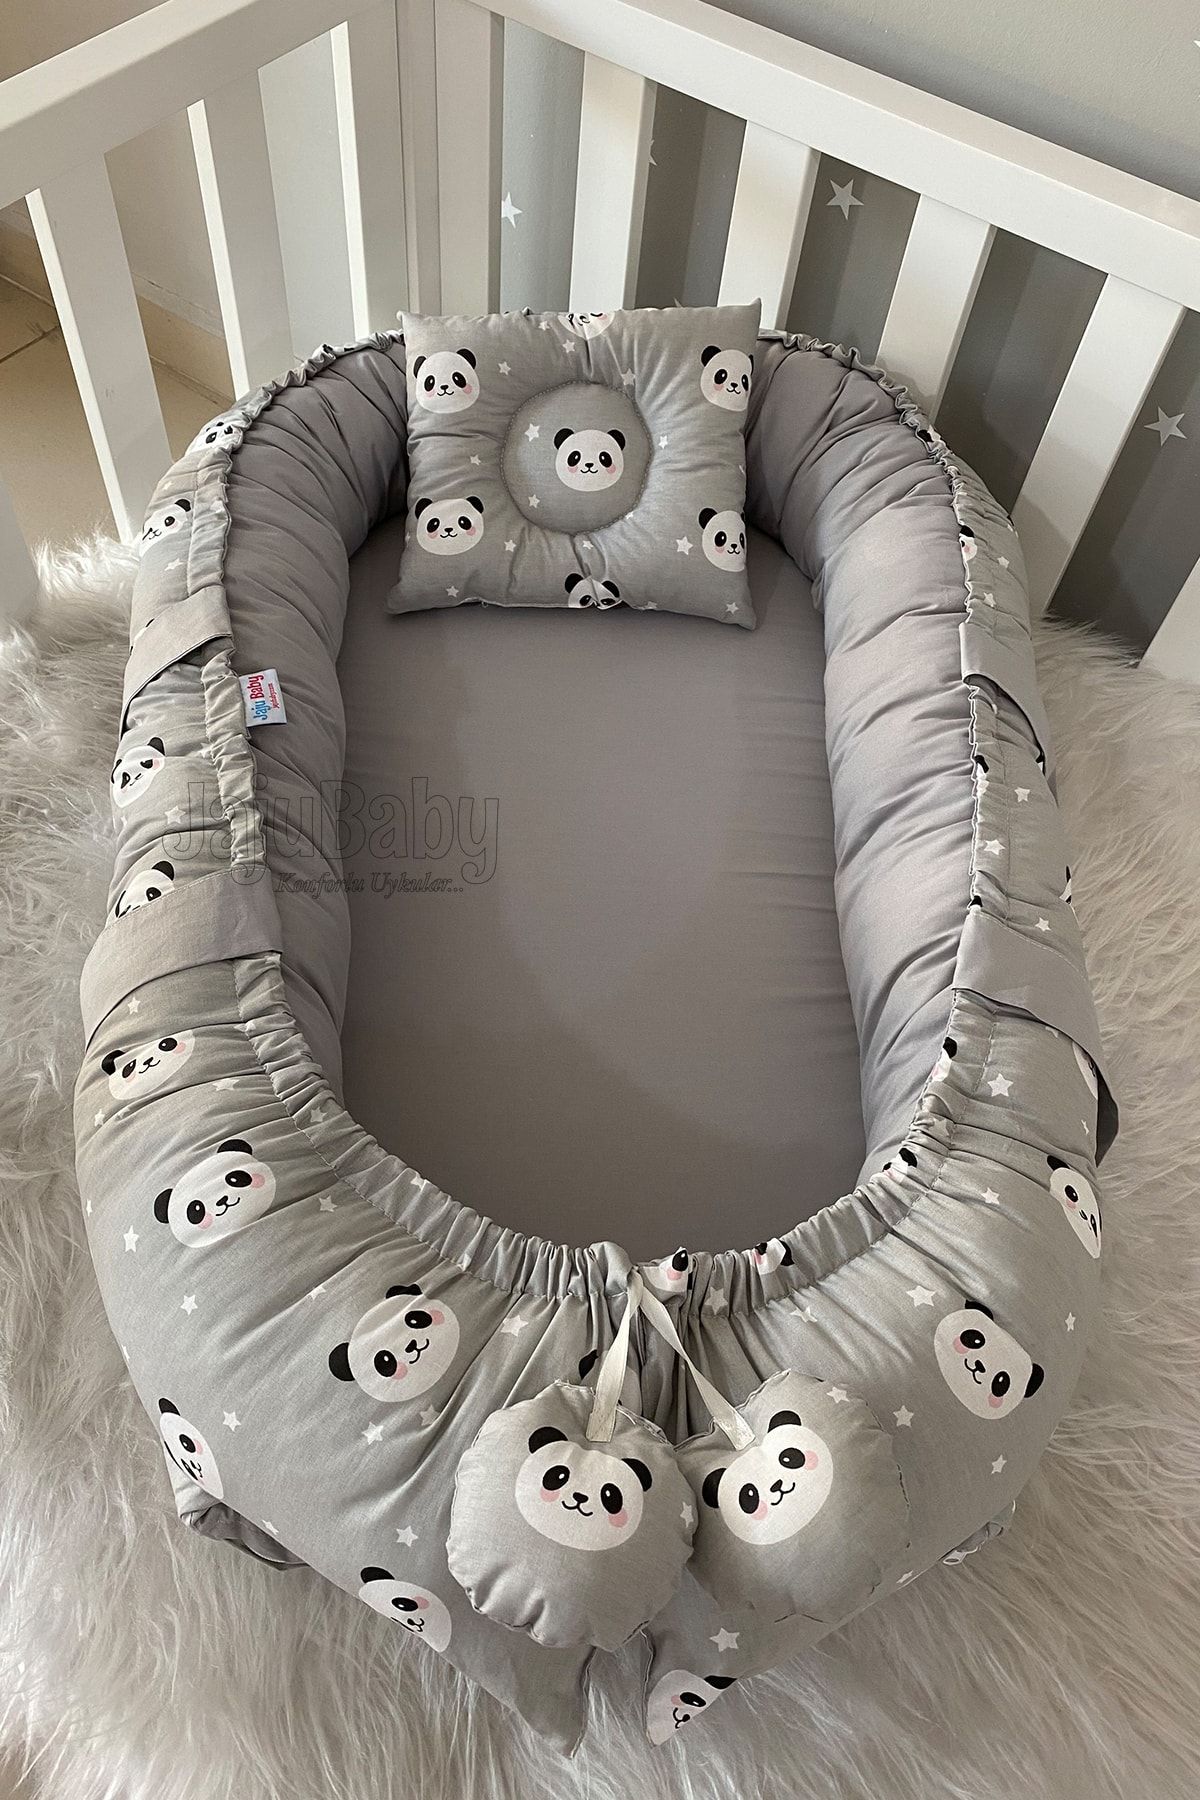 Jaju Baby Nest Gri Panda Lüx Tasarım Ortopedik Jaju-babynest Bebek Yatağı Anne Yanı Bebek Yatağı